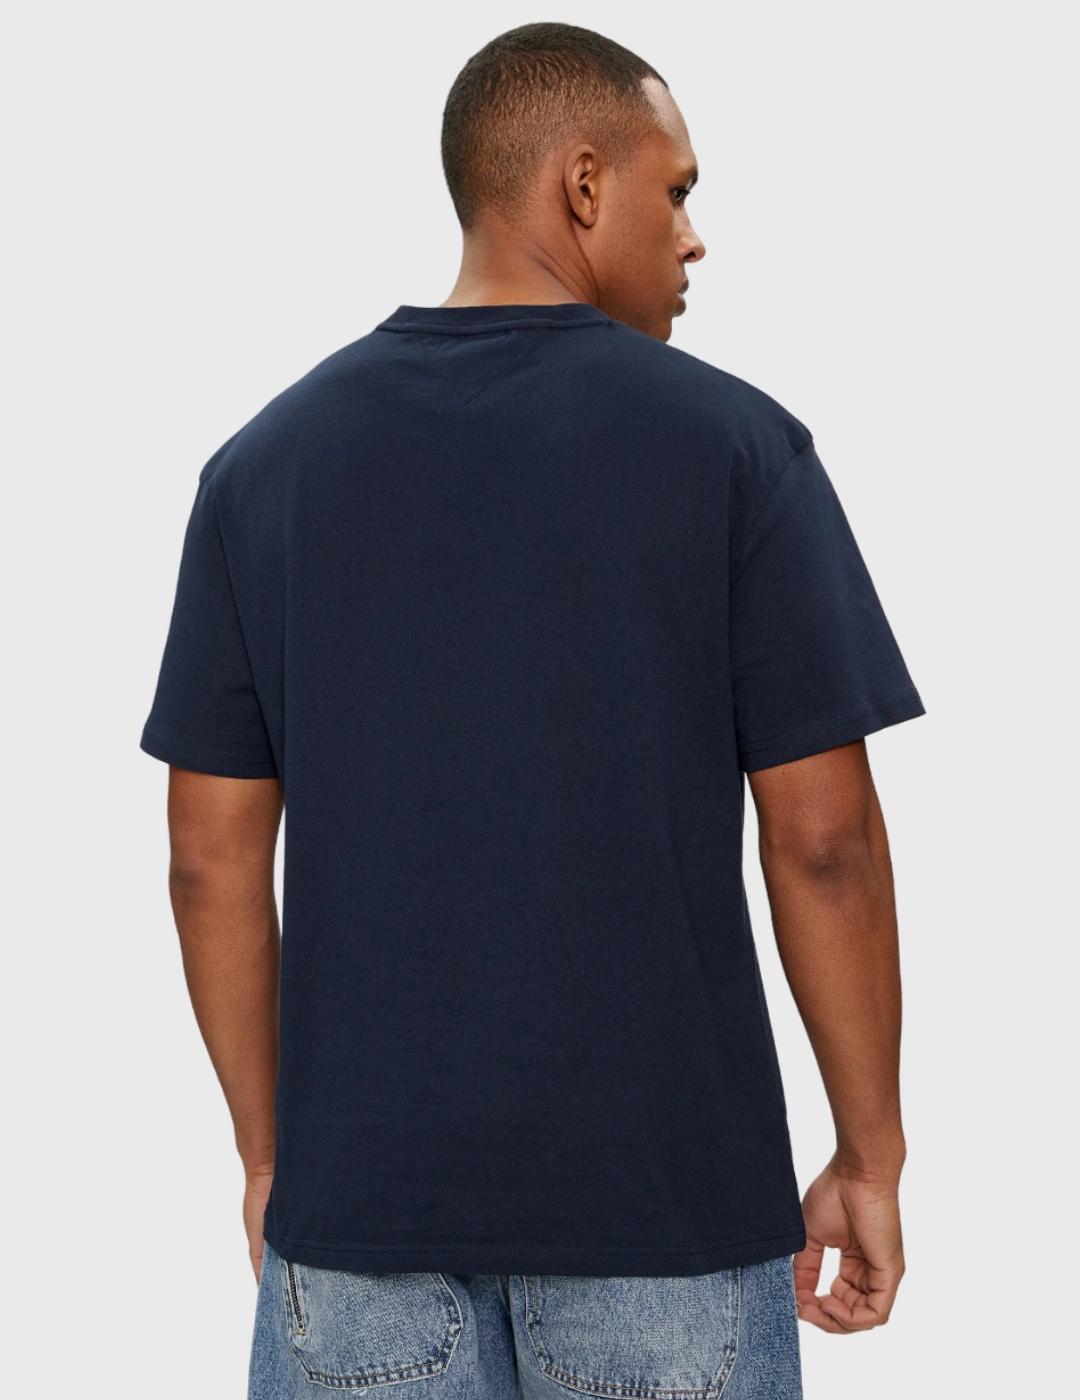 Camiseta Tommy Jeans con estampado marino Hombre